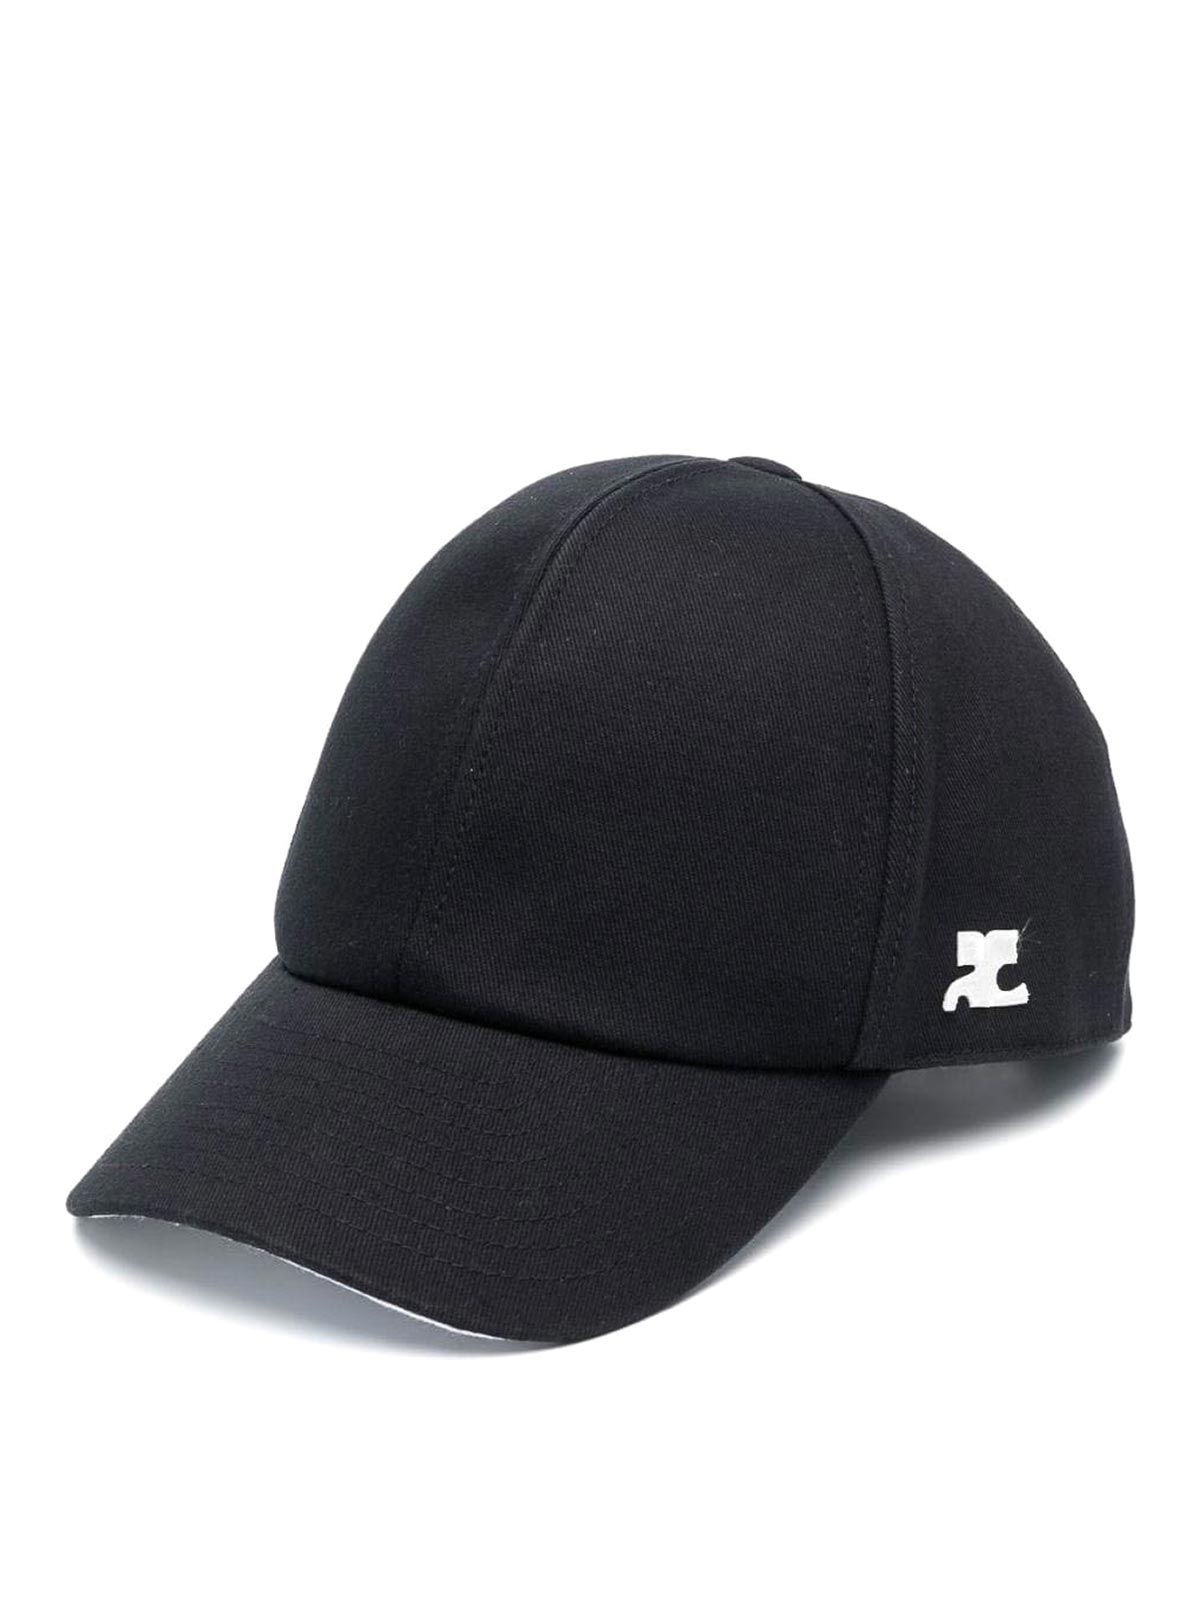 Hats & caps Courreges - Signature cotton cap - 123ACT002CO00249999